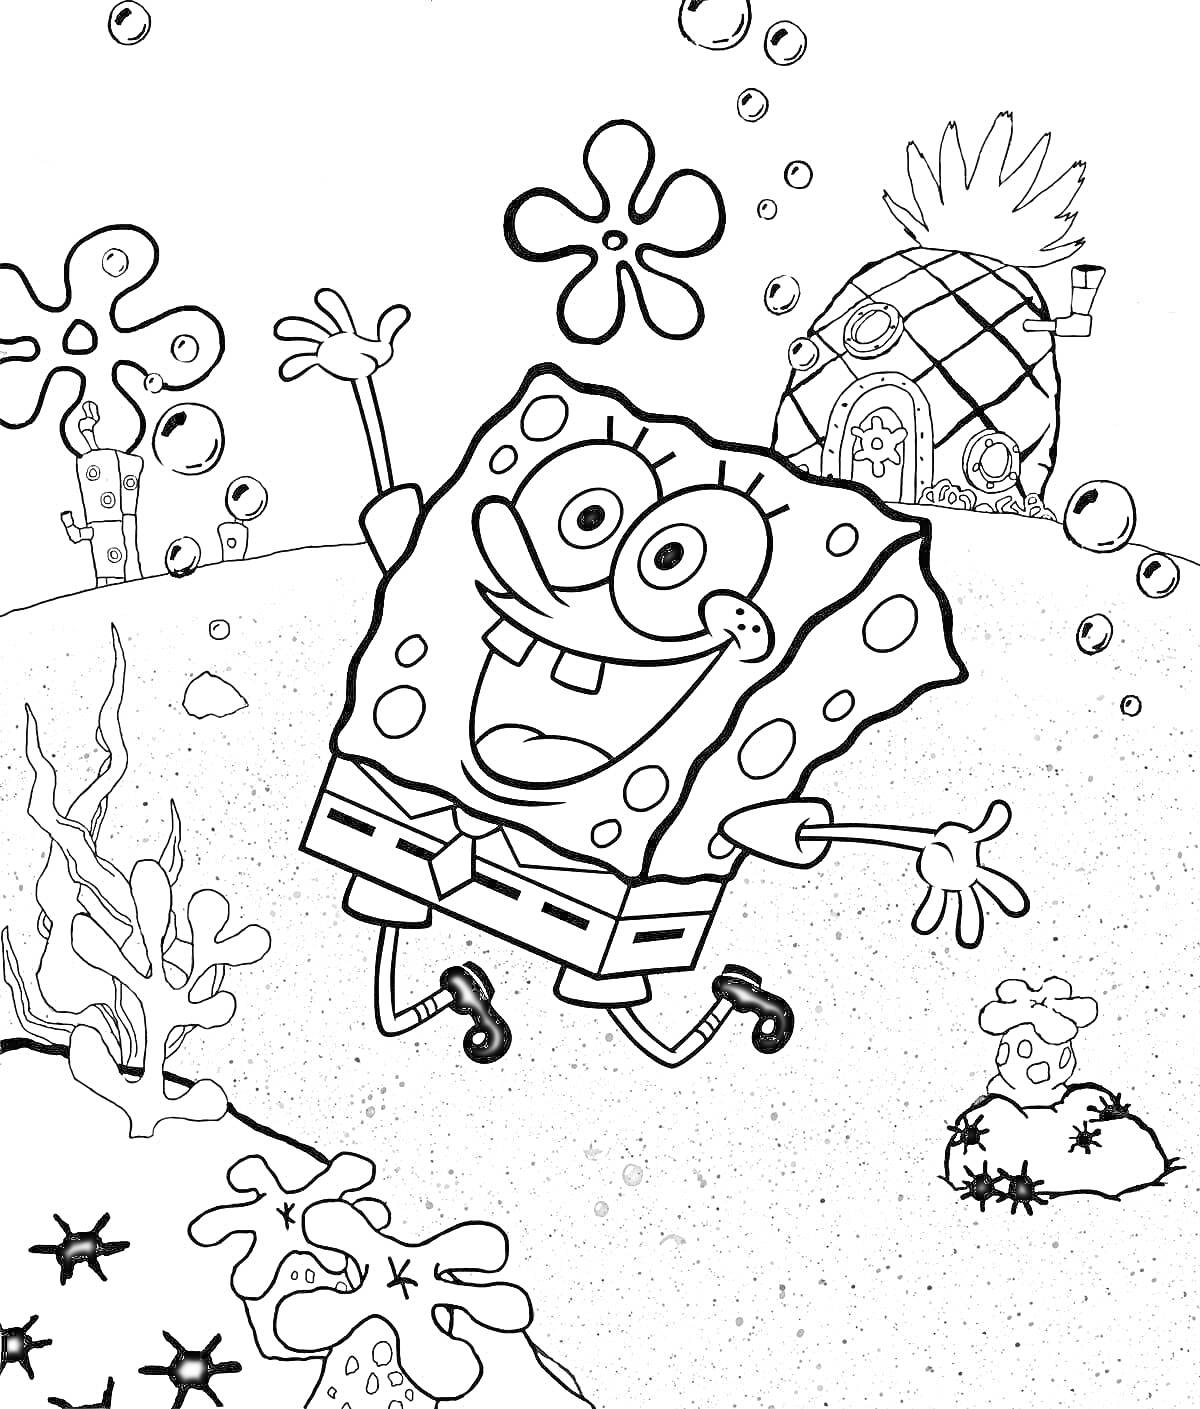 Раскраска Губка Боб, пузырьки, морское дно с растениями и Пайнэппл-Хаус.